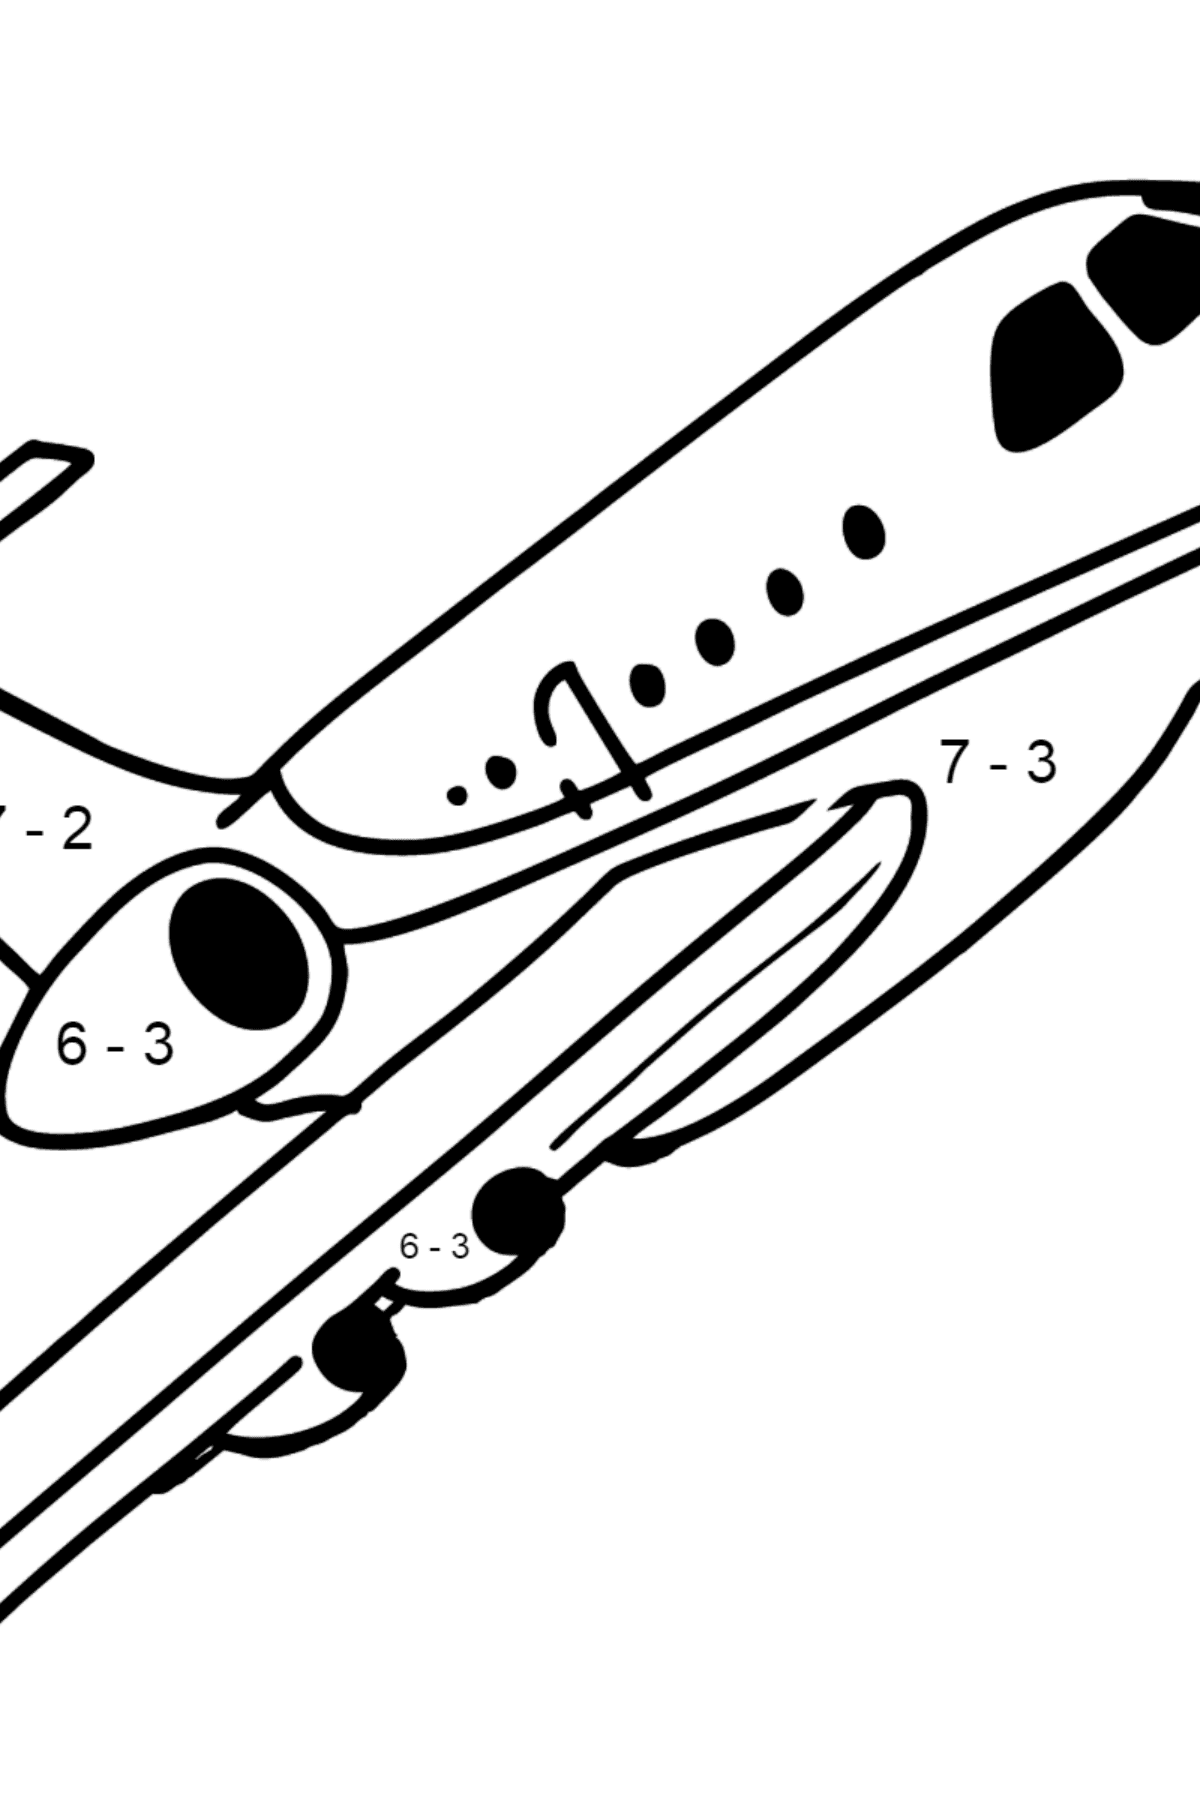 Airbus Flugzeug Ausmalbild - Mathe Ausmalbilder - Subtraktion für Kinder